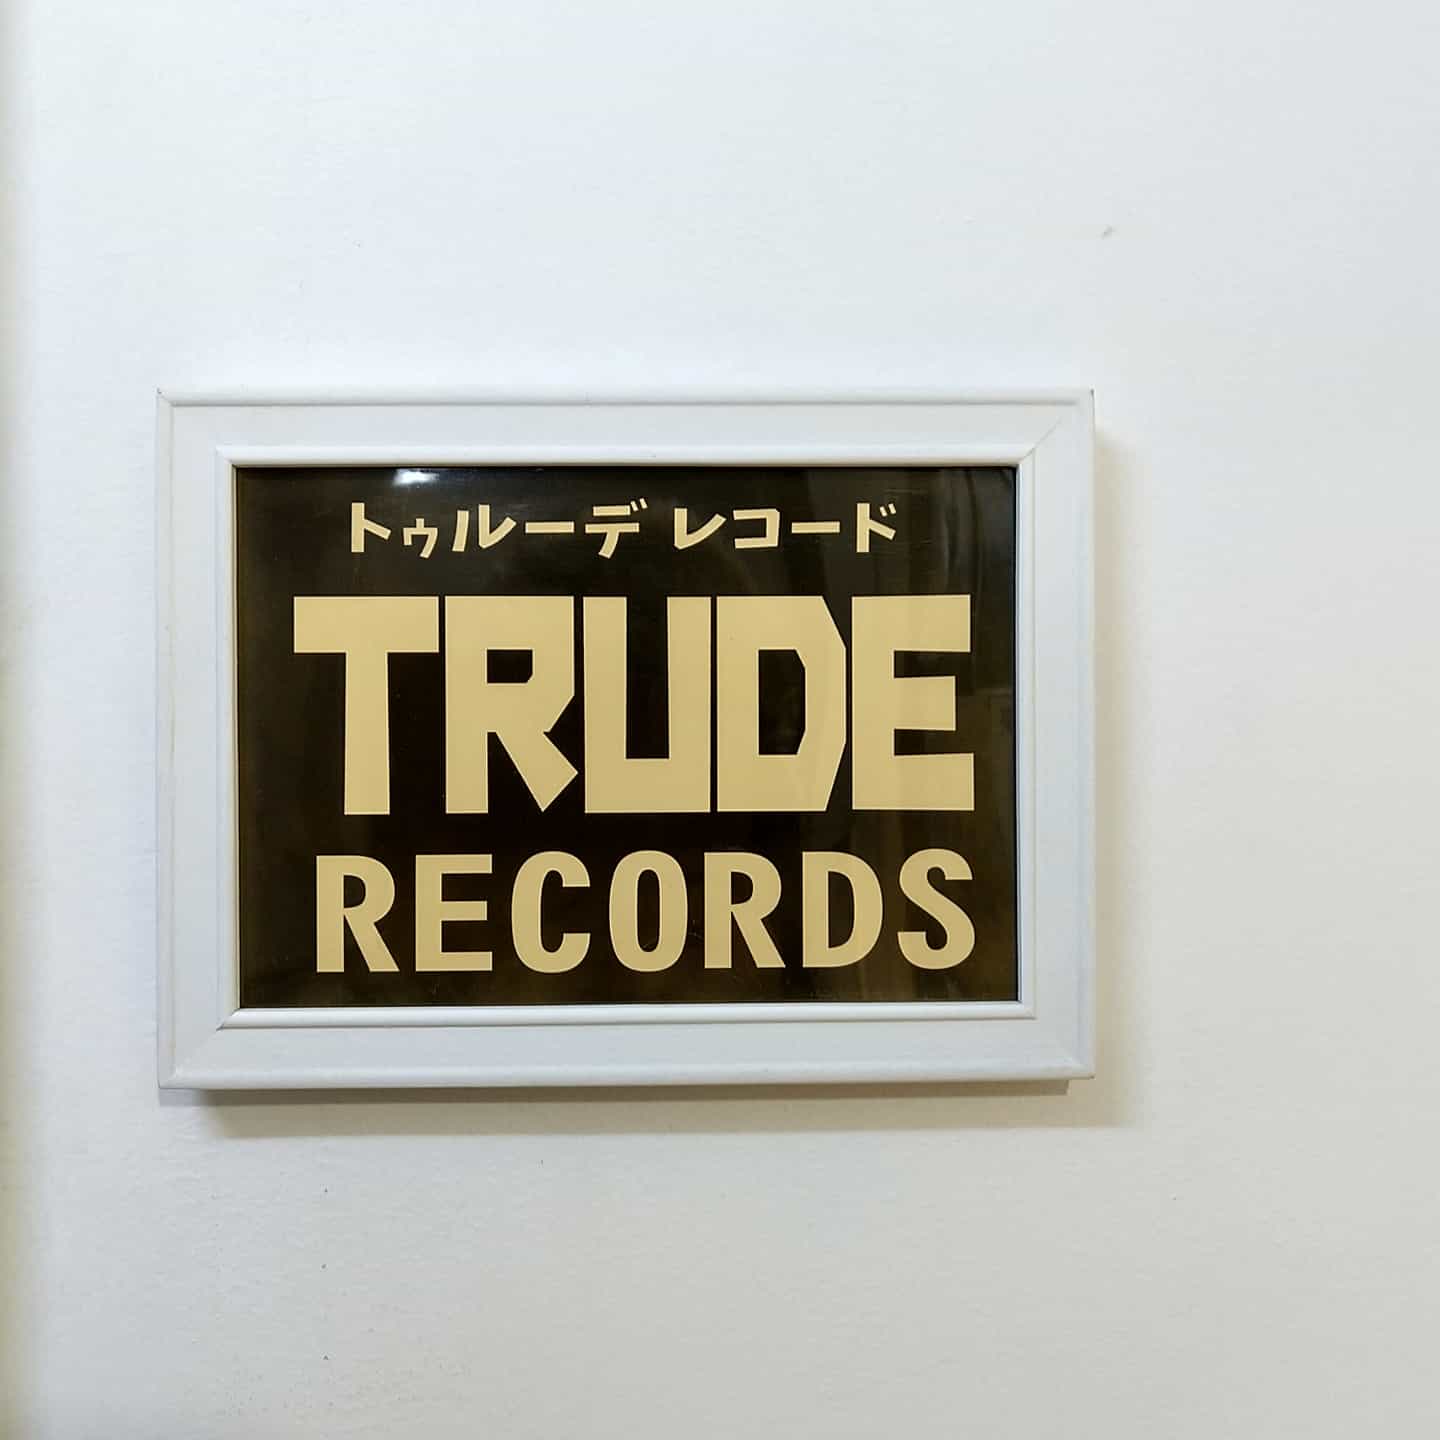 Trude Records